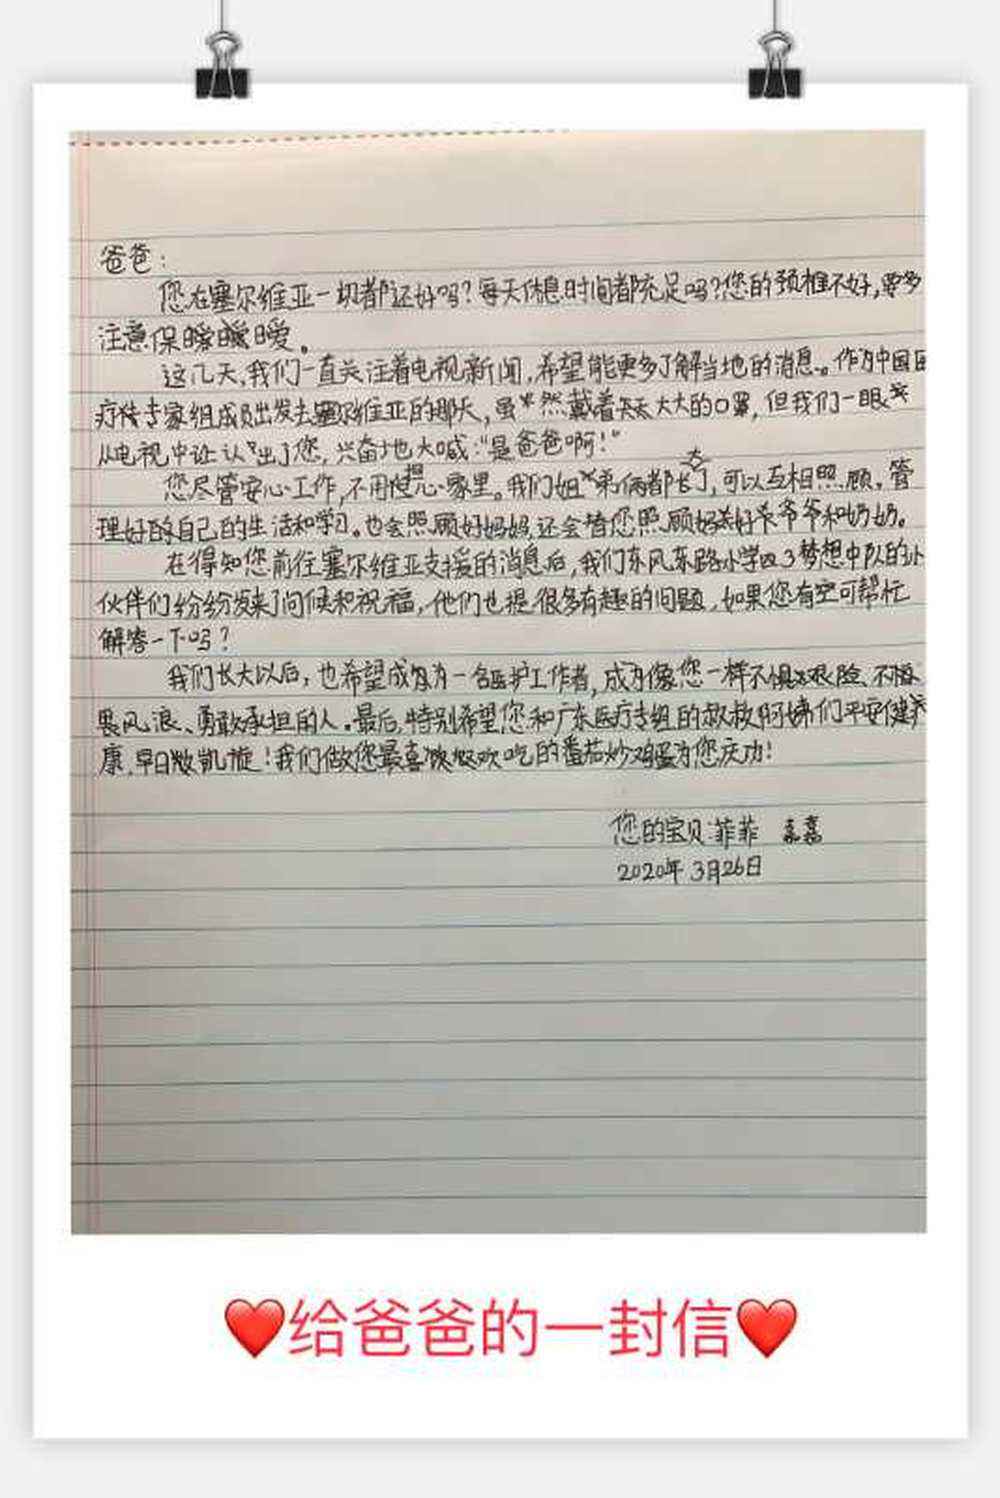 共同战“疫”|中国专家组的影像日志——观察尼什以及给医生爸爸的一封信